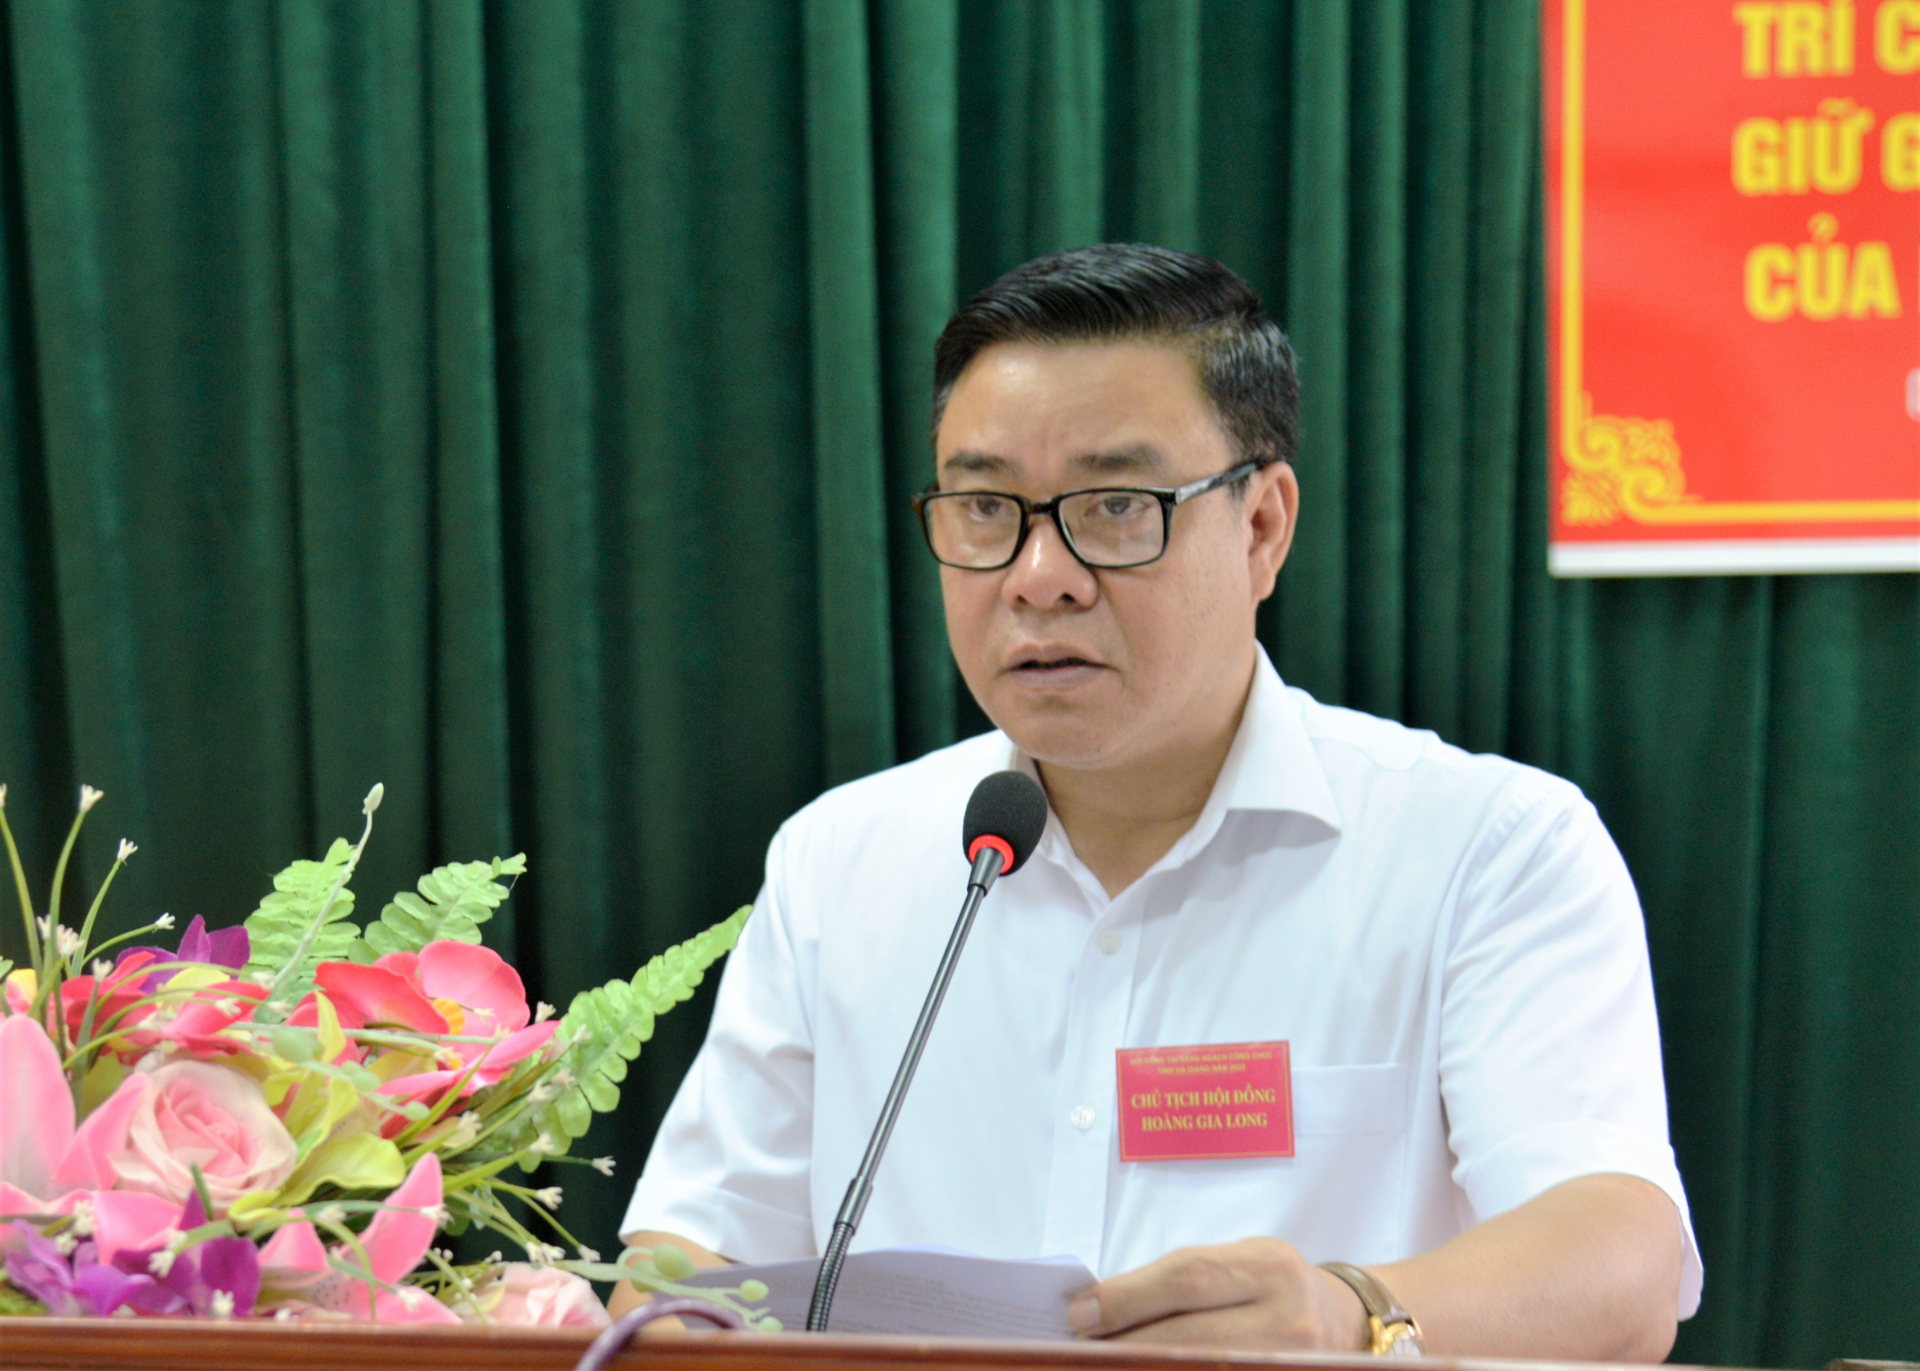 Phó Chủ tịch Thường trực UBND tỉnh Hoàng Gia Long phát biểu tại Lễ khai mạc kỳ thi nâng ngạch công chức năm 2022.